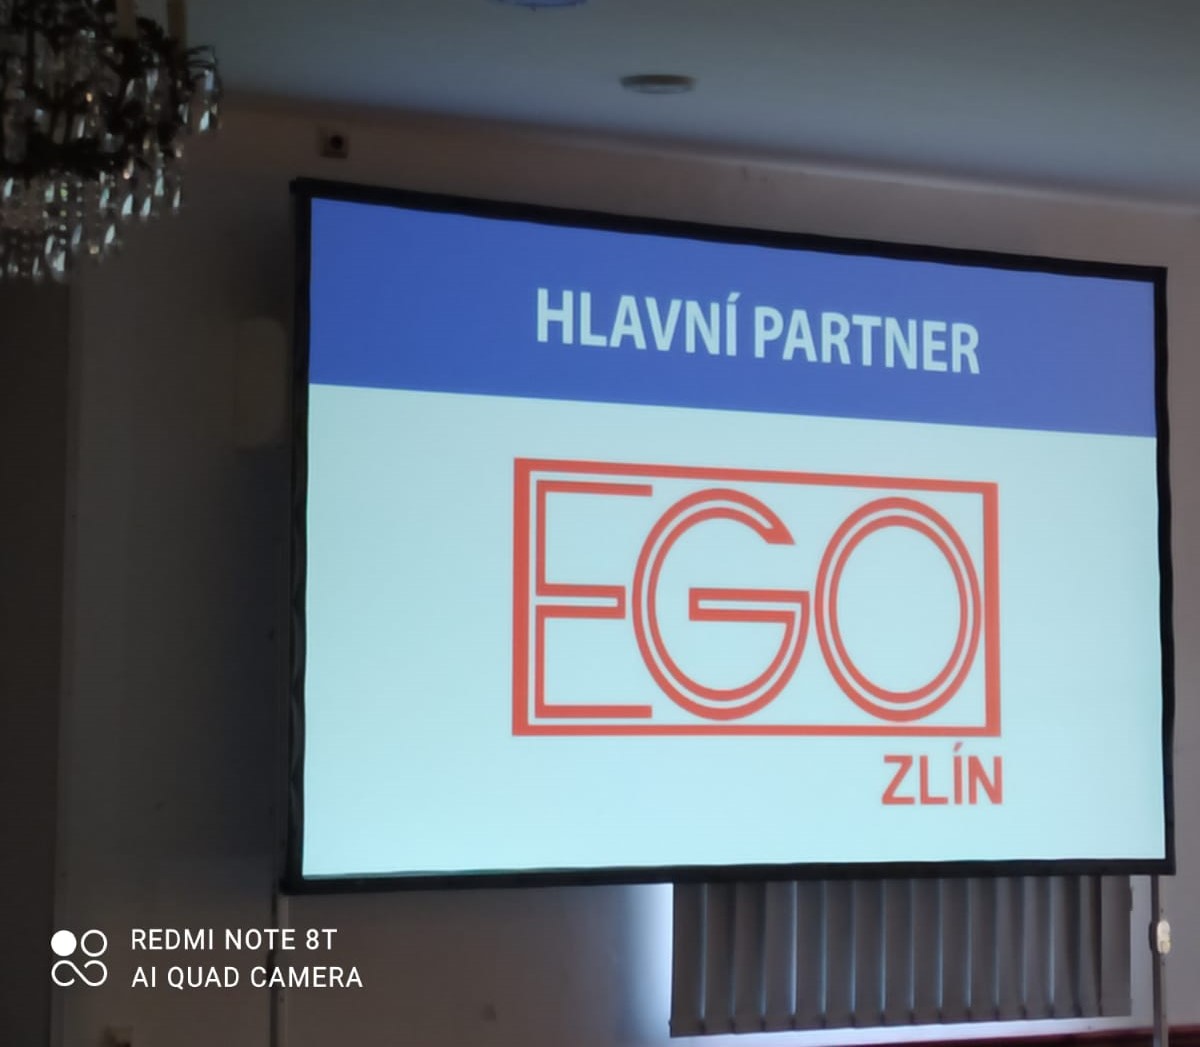 EGO Zlín jako hlavní partner konference 